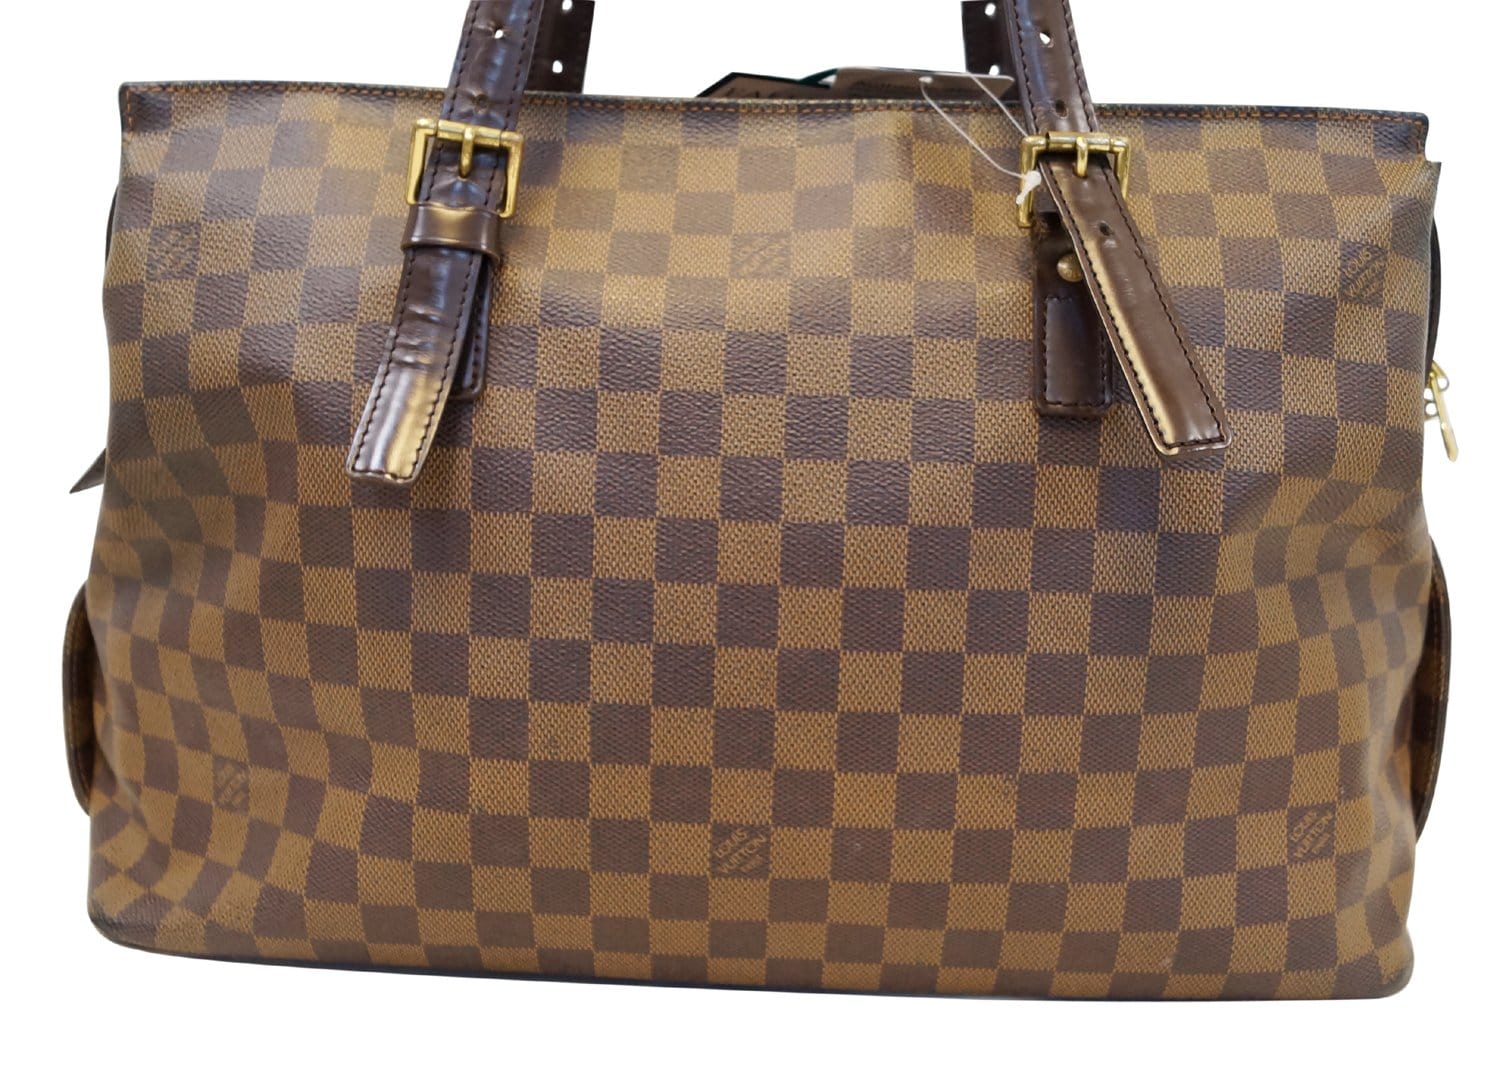  Fits LV Louis Vuitton Chelsea Damier Ebene large - Bag